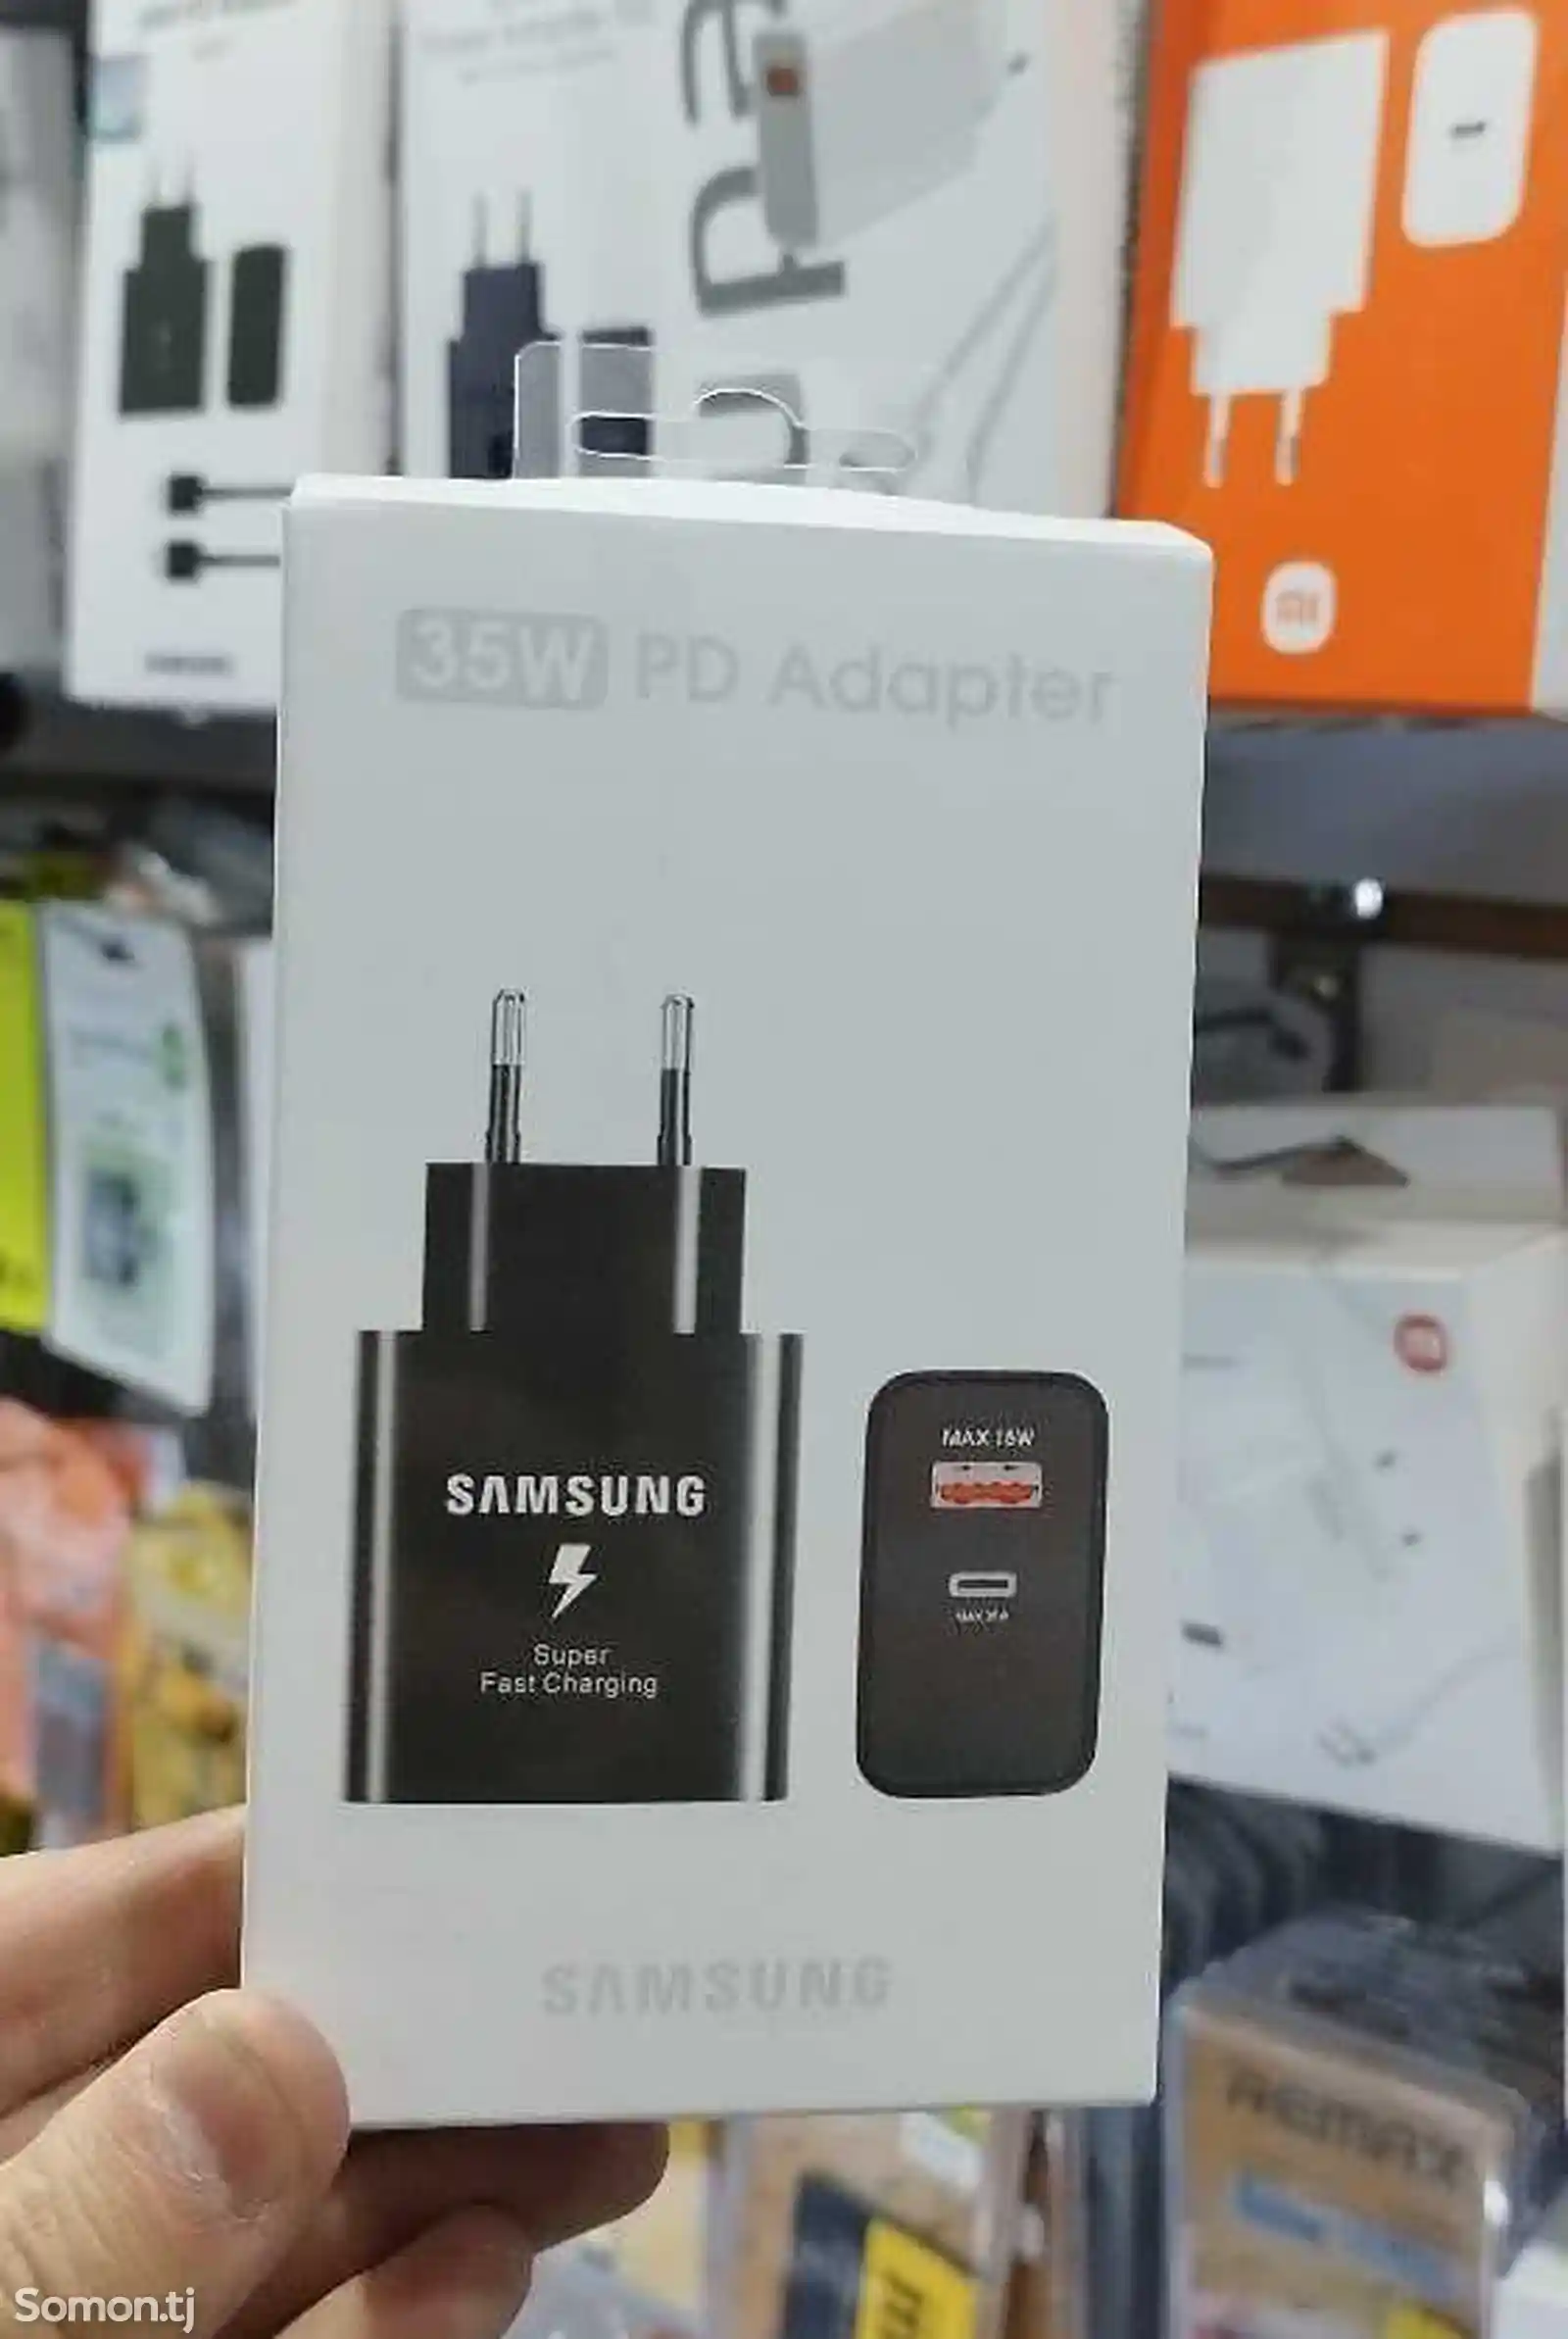 Адаптер 35W PD Adapter Samsung-1